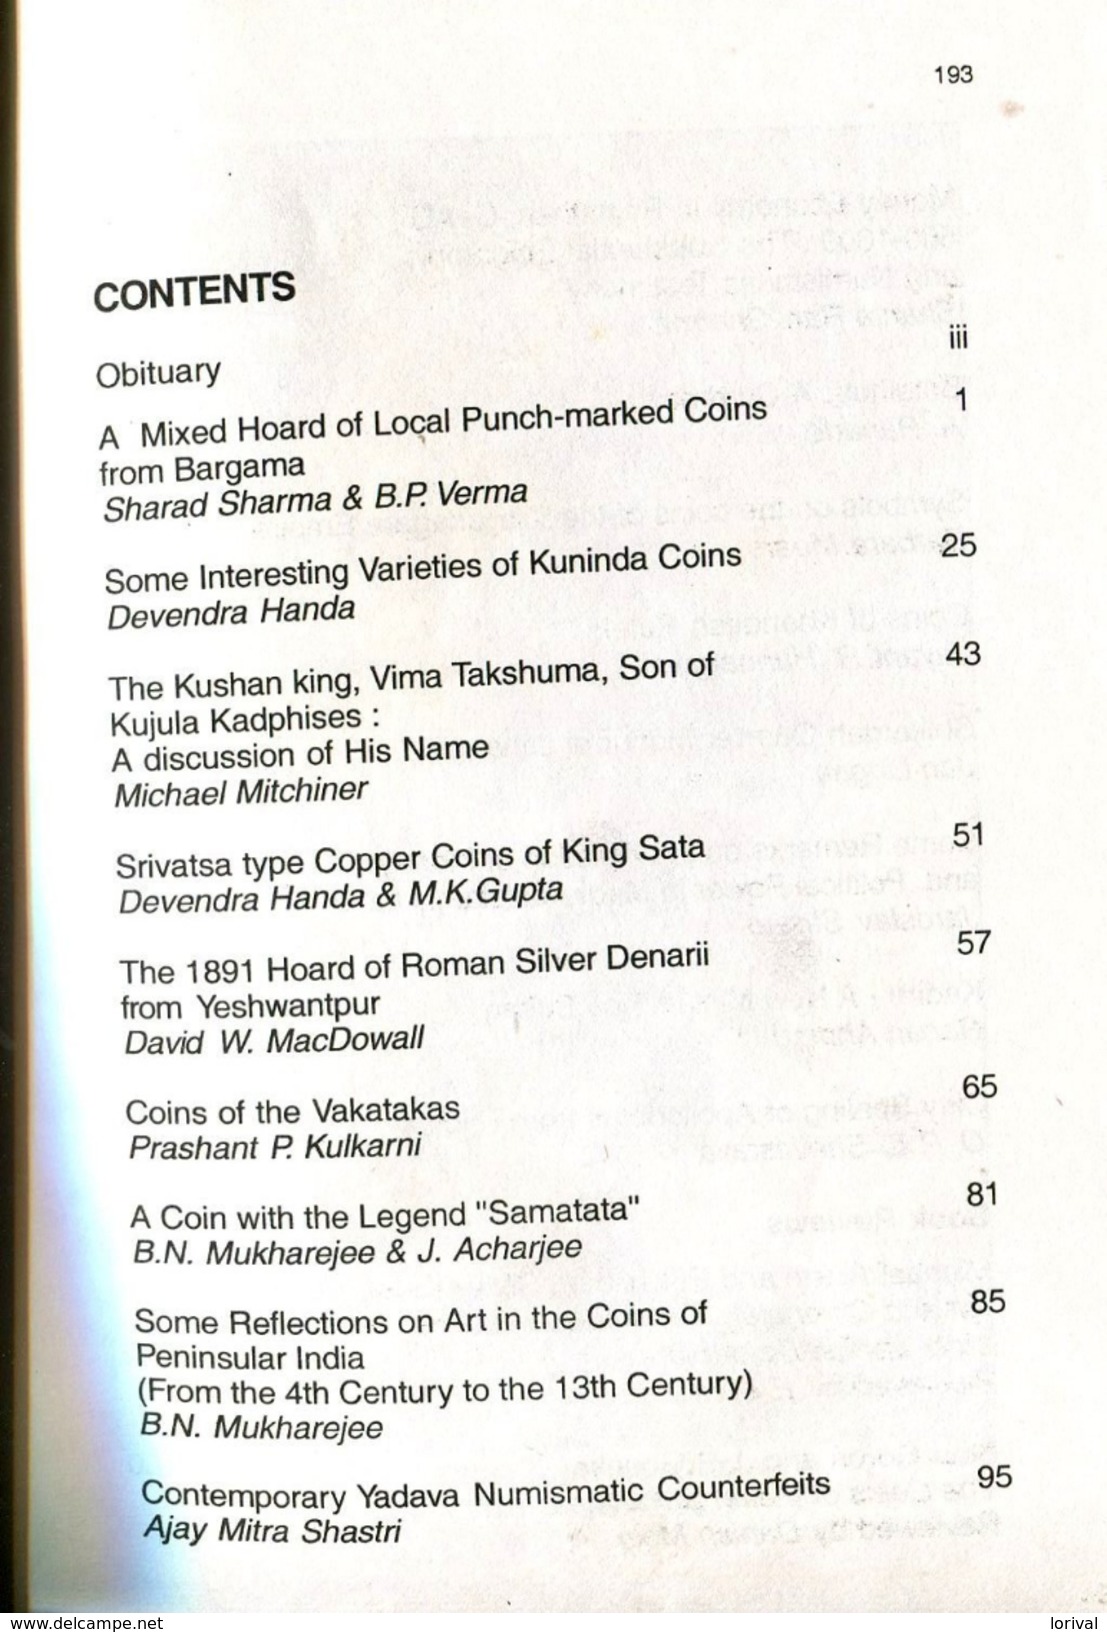 NUMISMATIC DIGEST  21x13  Vol 25-26 2001-2002 192 PageS - Livres & Logiciels